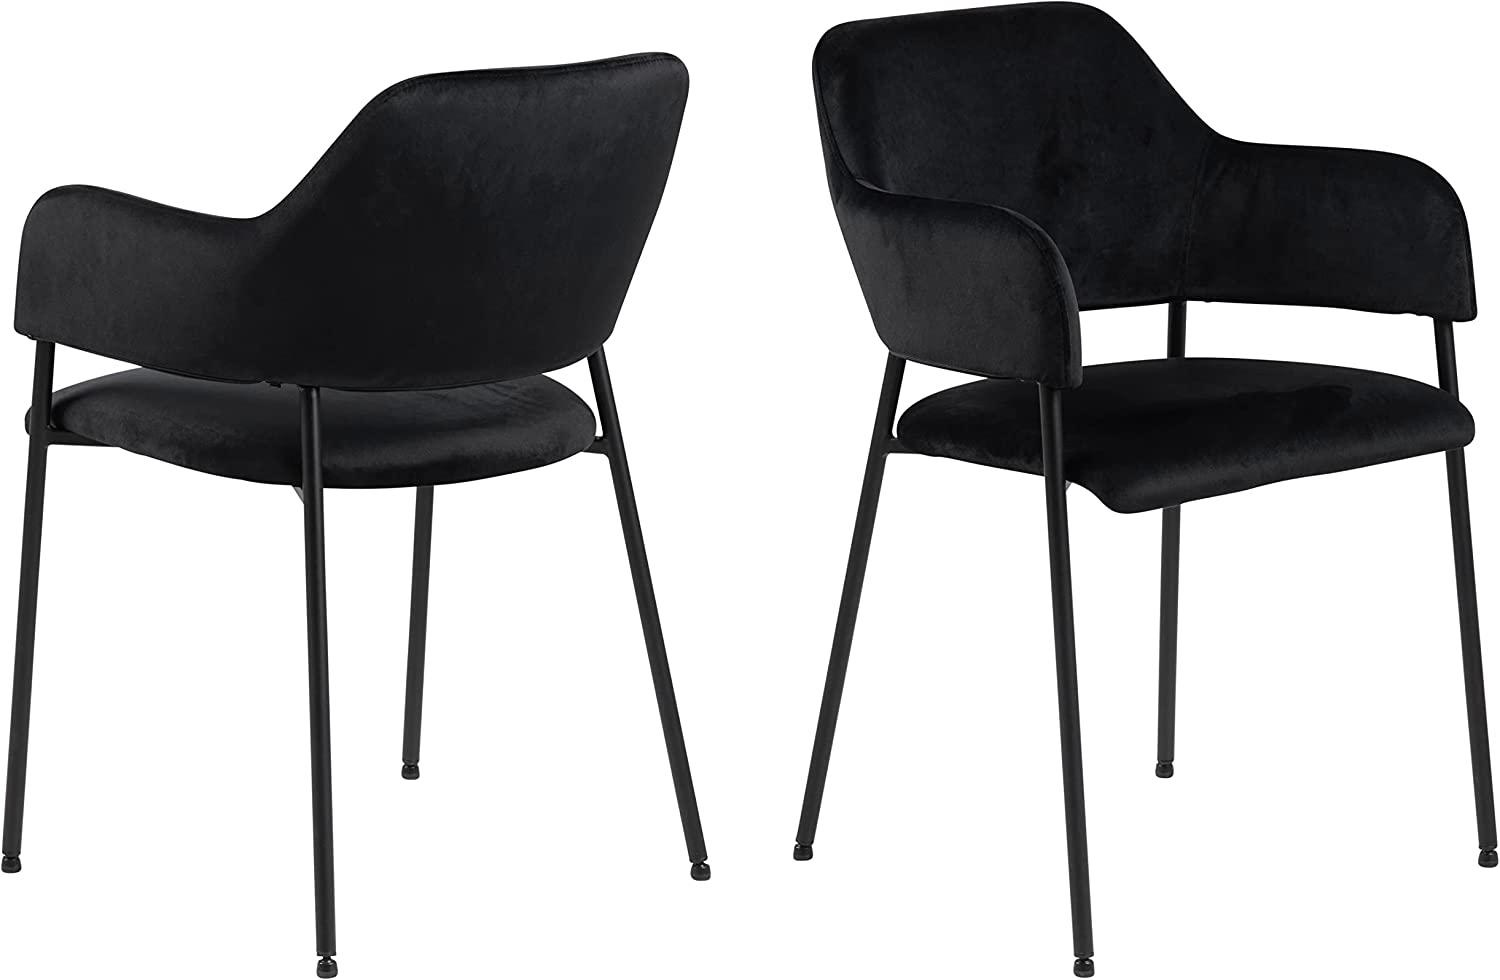 2x Lisa Esszimmerstuhl Armlehne schwarz Stuhl Set Esszimmer Stühle Küchenstuhl Bild 1